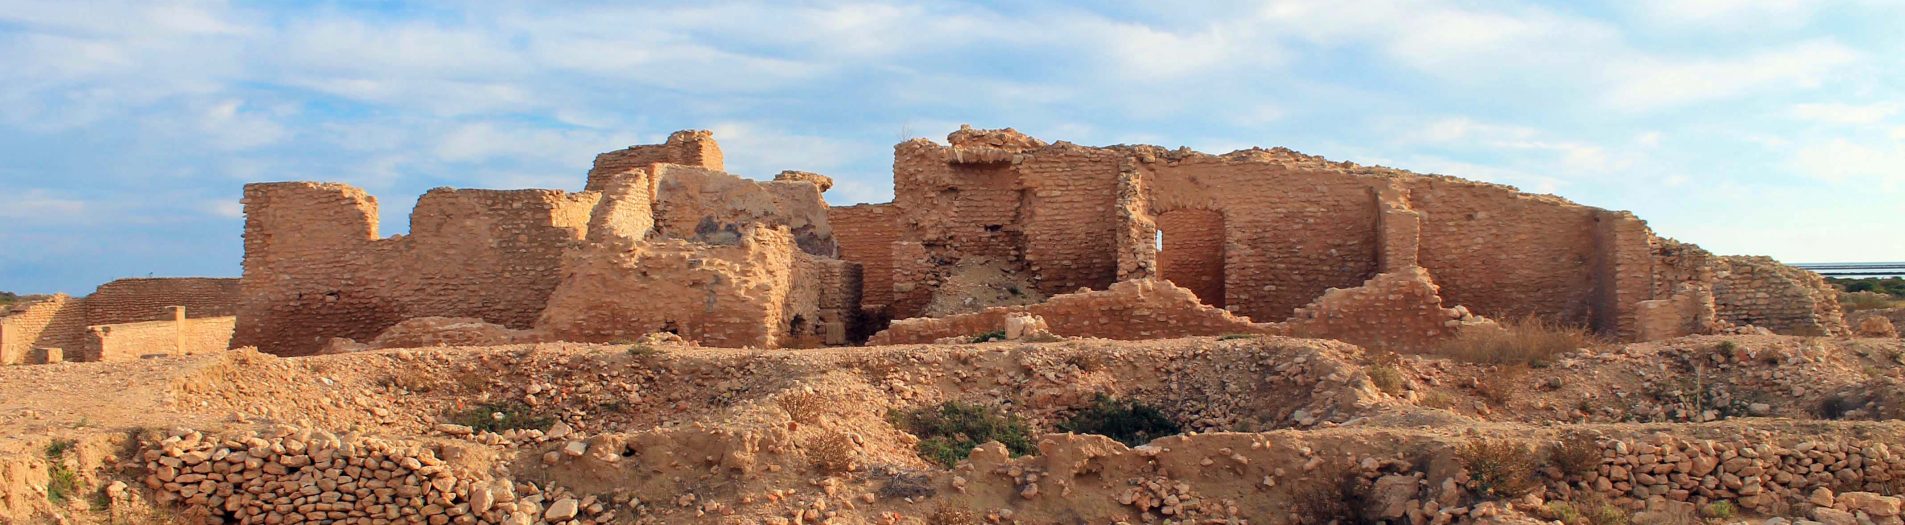 Le site archéologique de Thyna à Sfax